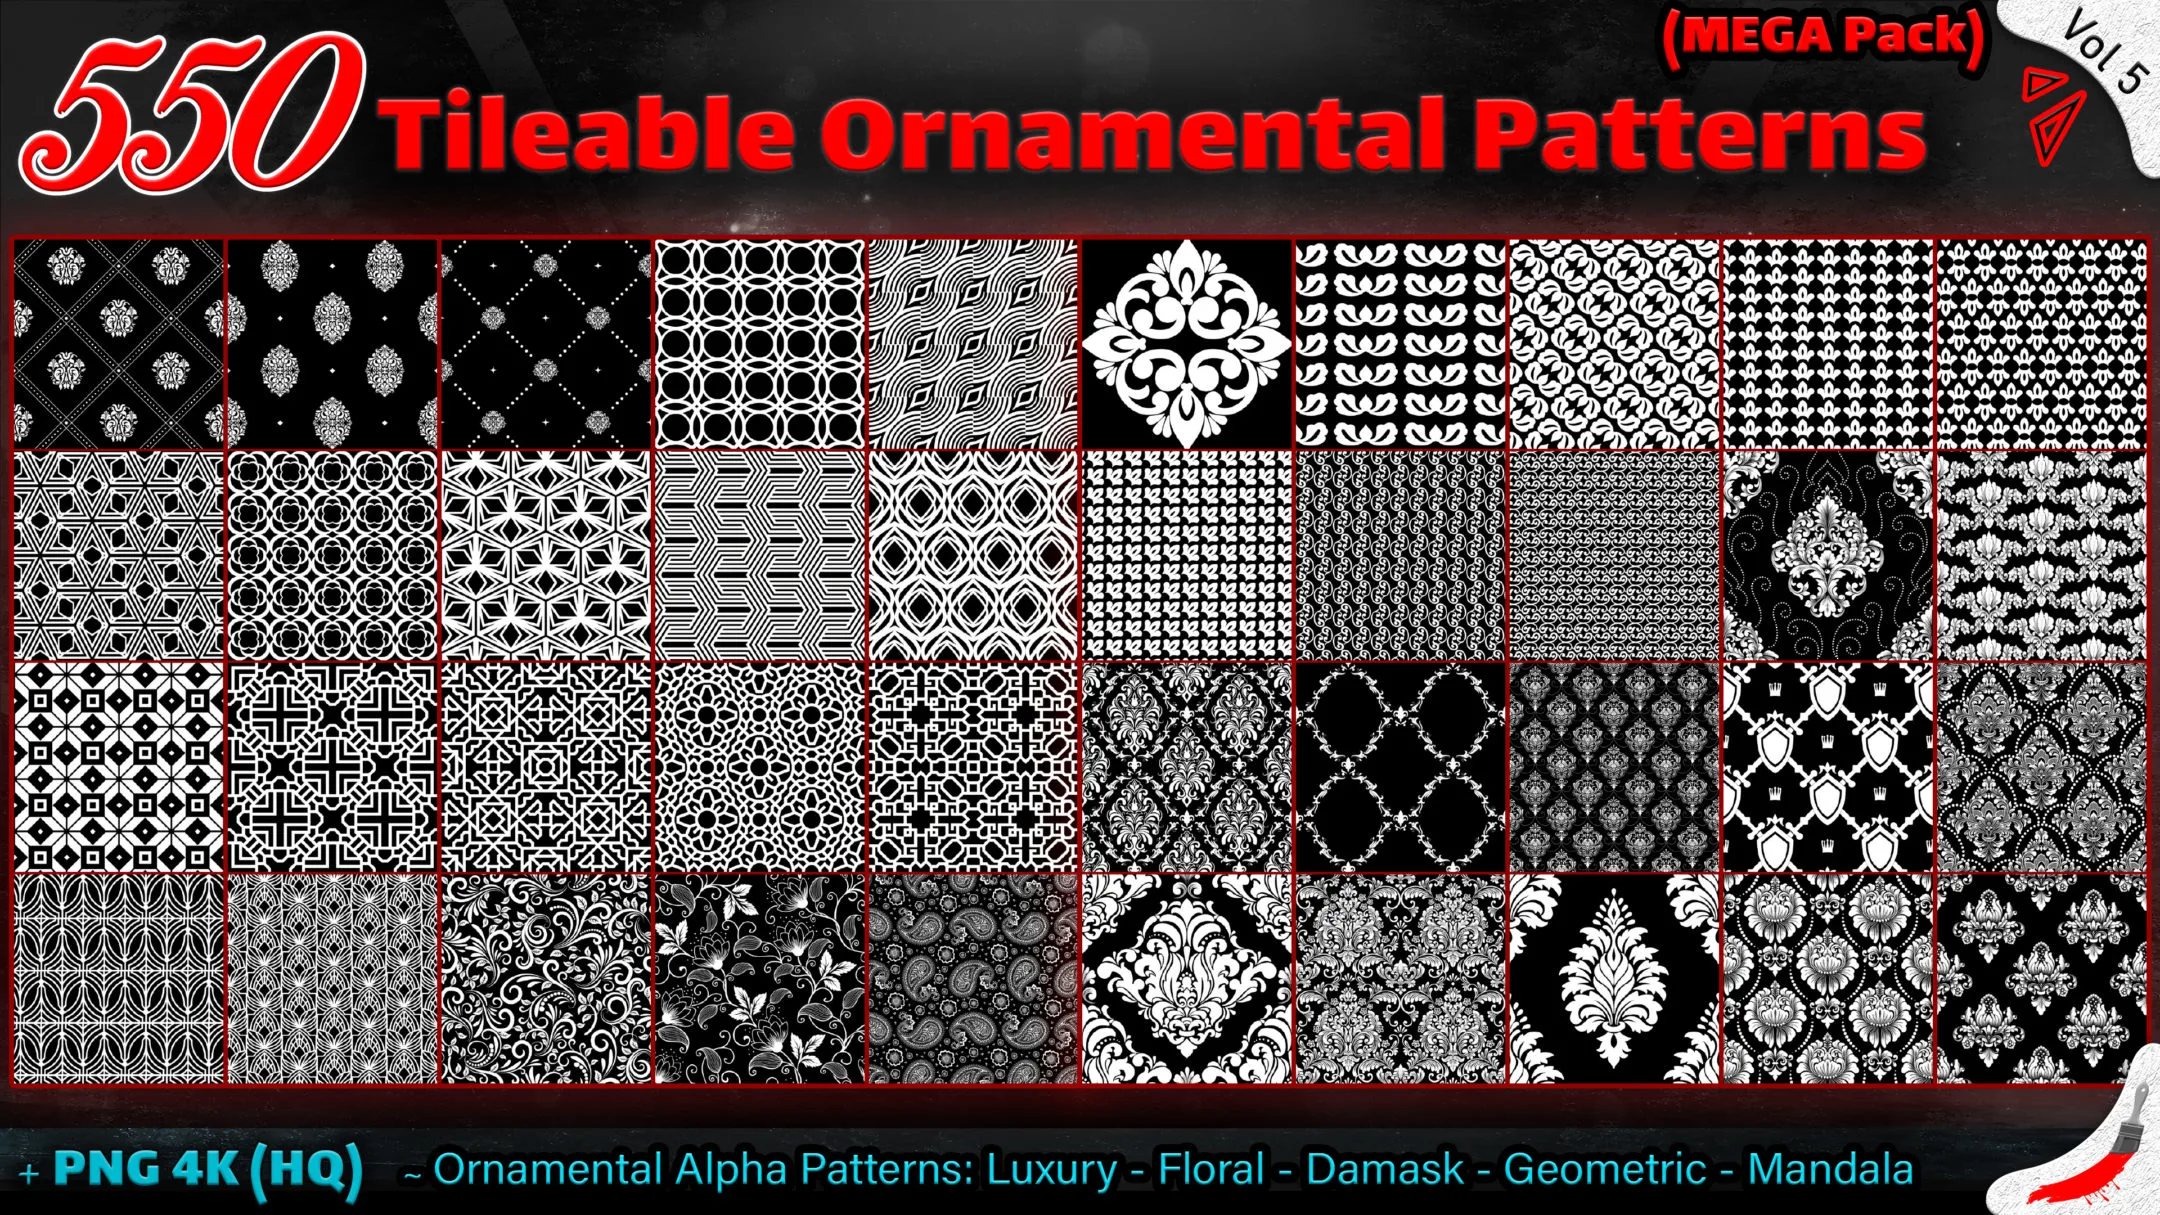 550 Tileable Ornamental Patterns (MEGA Pack) - Vol 5